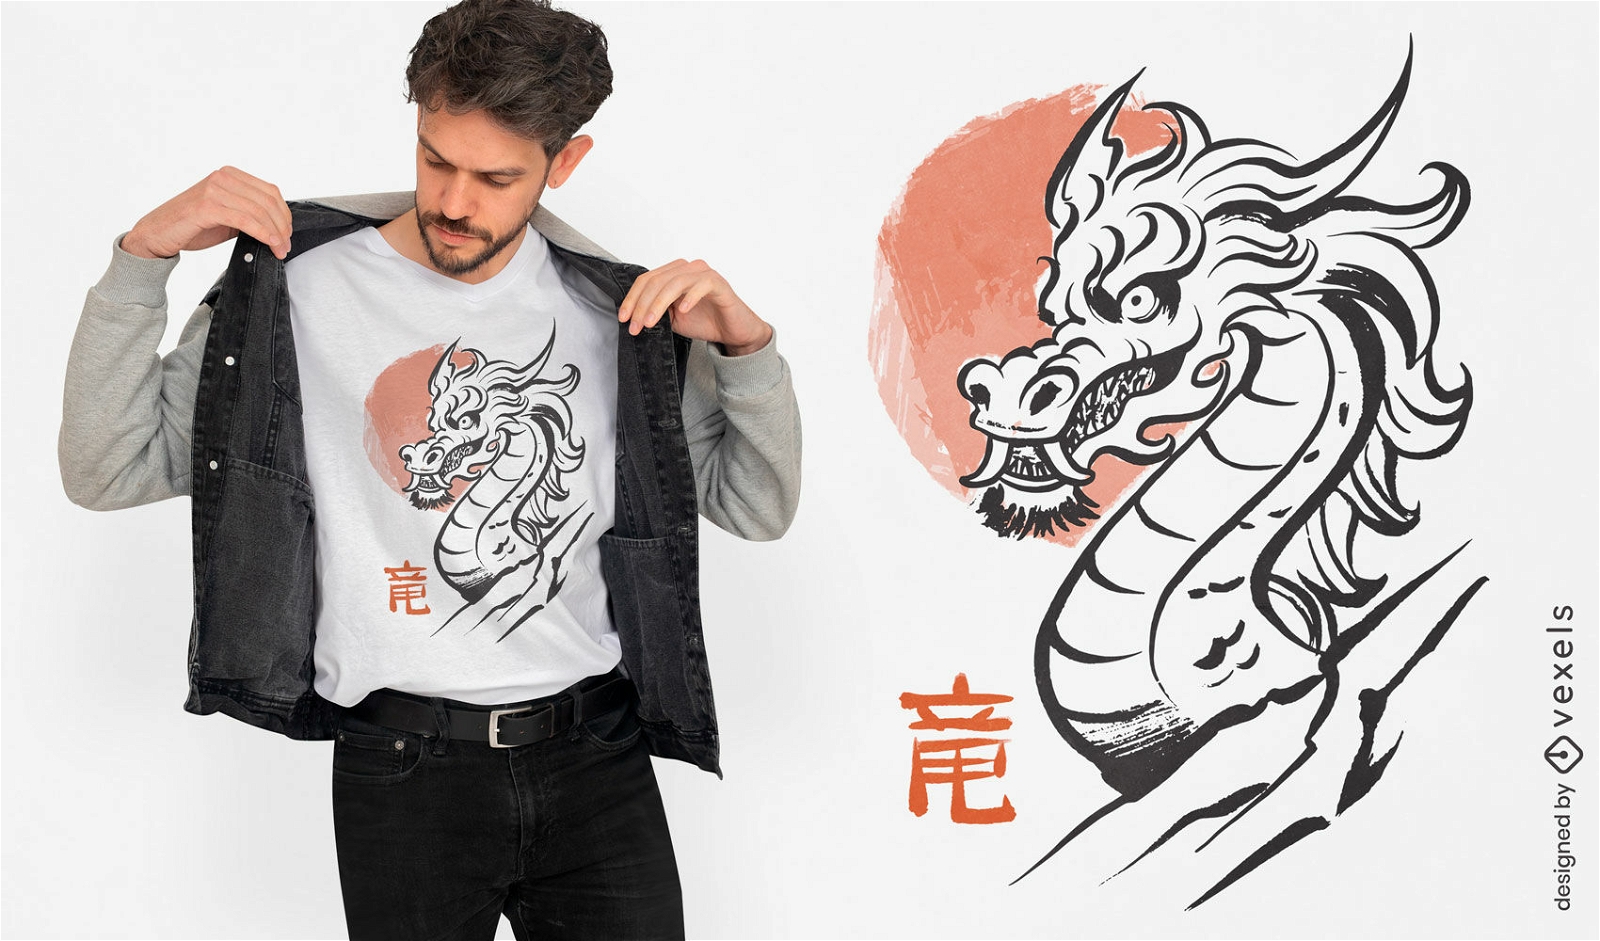 Dise?o de camiseta con tinta Dragon Year.